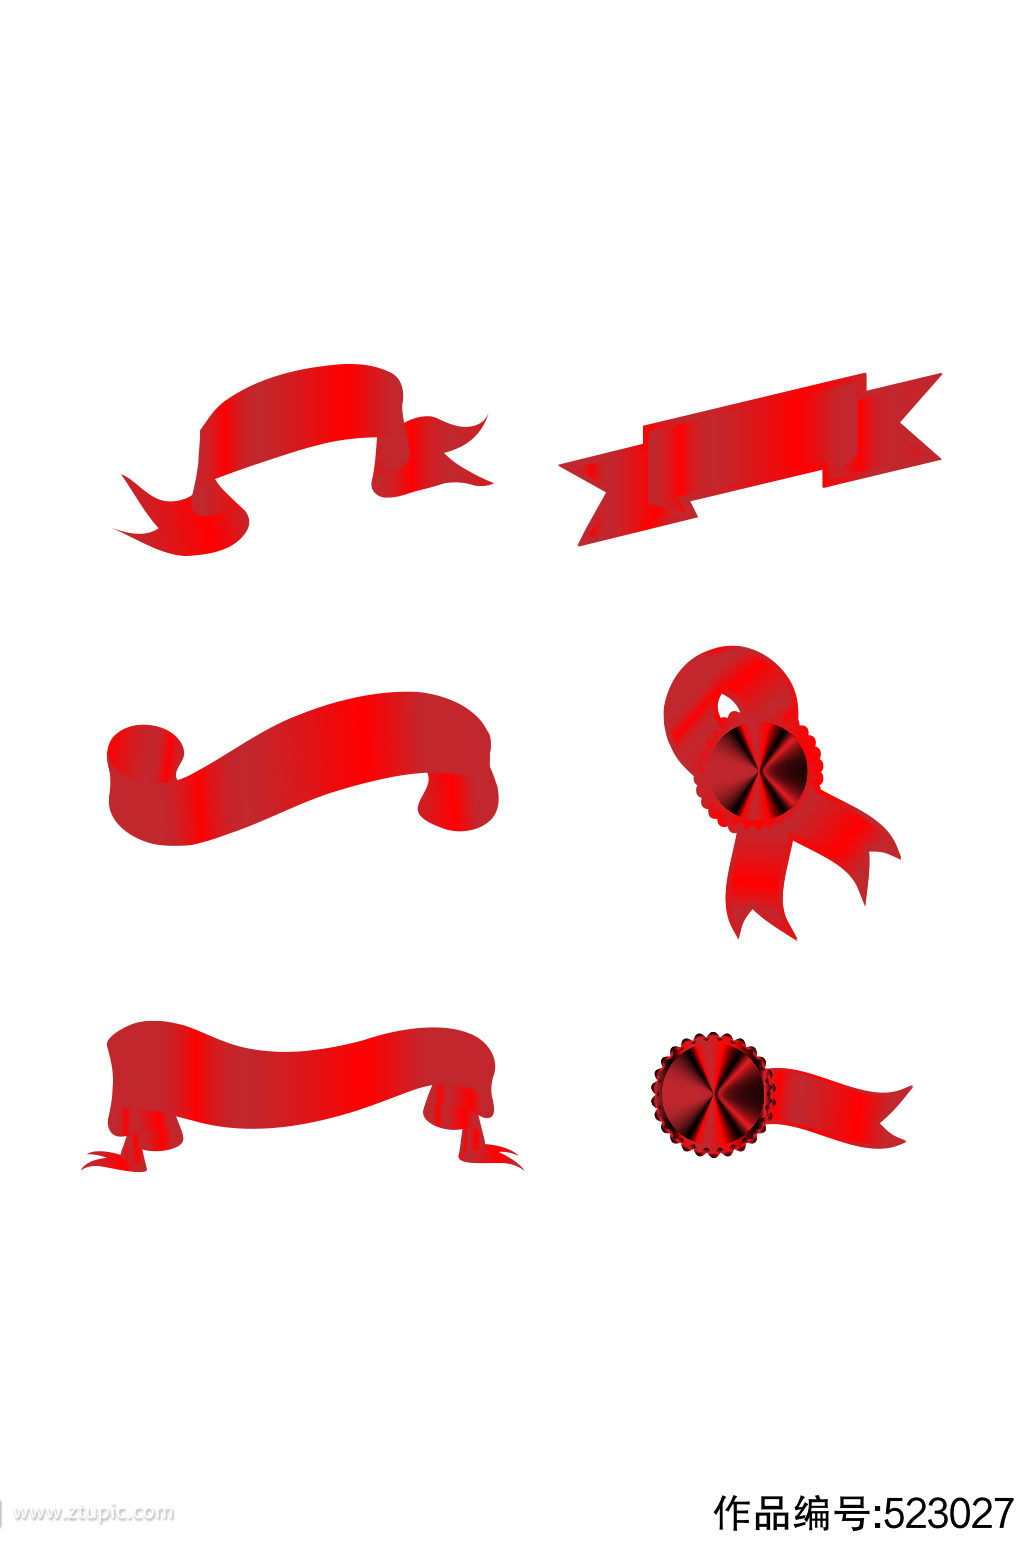 六款红色飘带装饰矢量图标素材